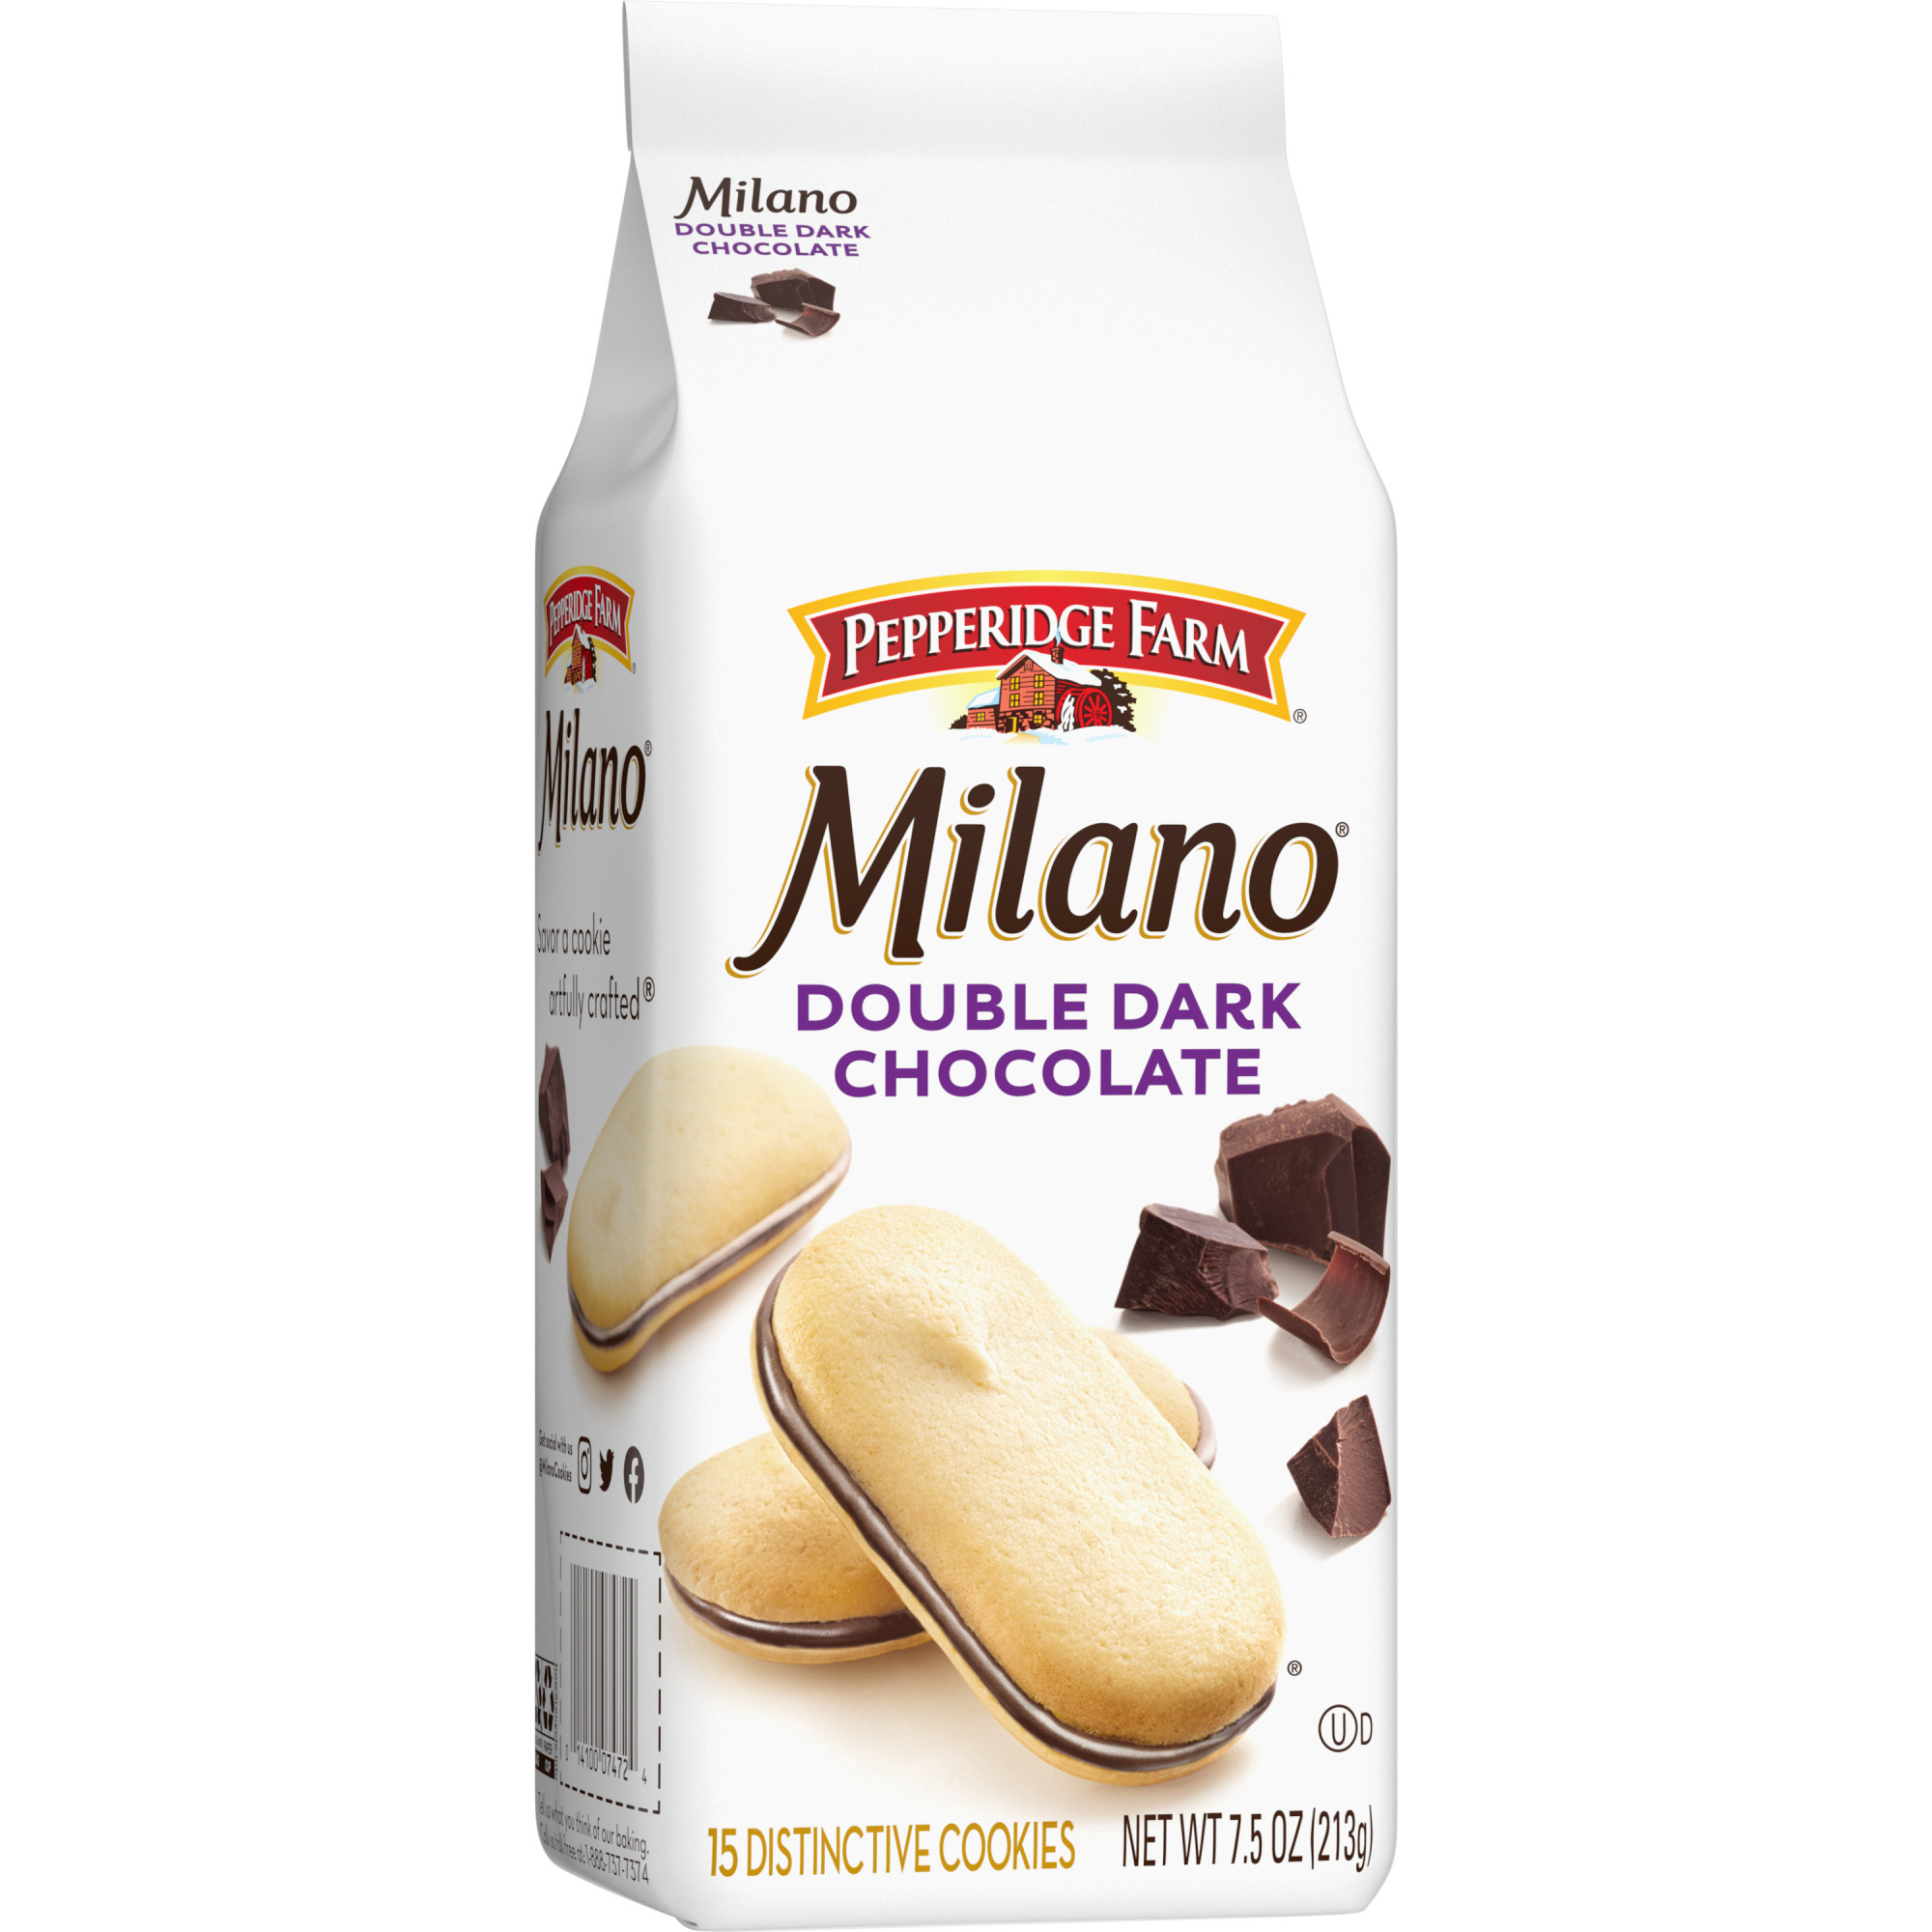 Bánh quy bơ Milano Socola đen hai lớp Pepperidge Farm 213g, Sản xuất tại